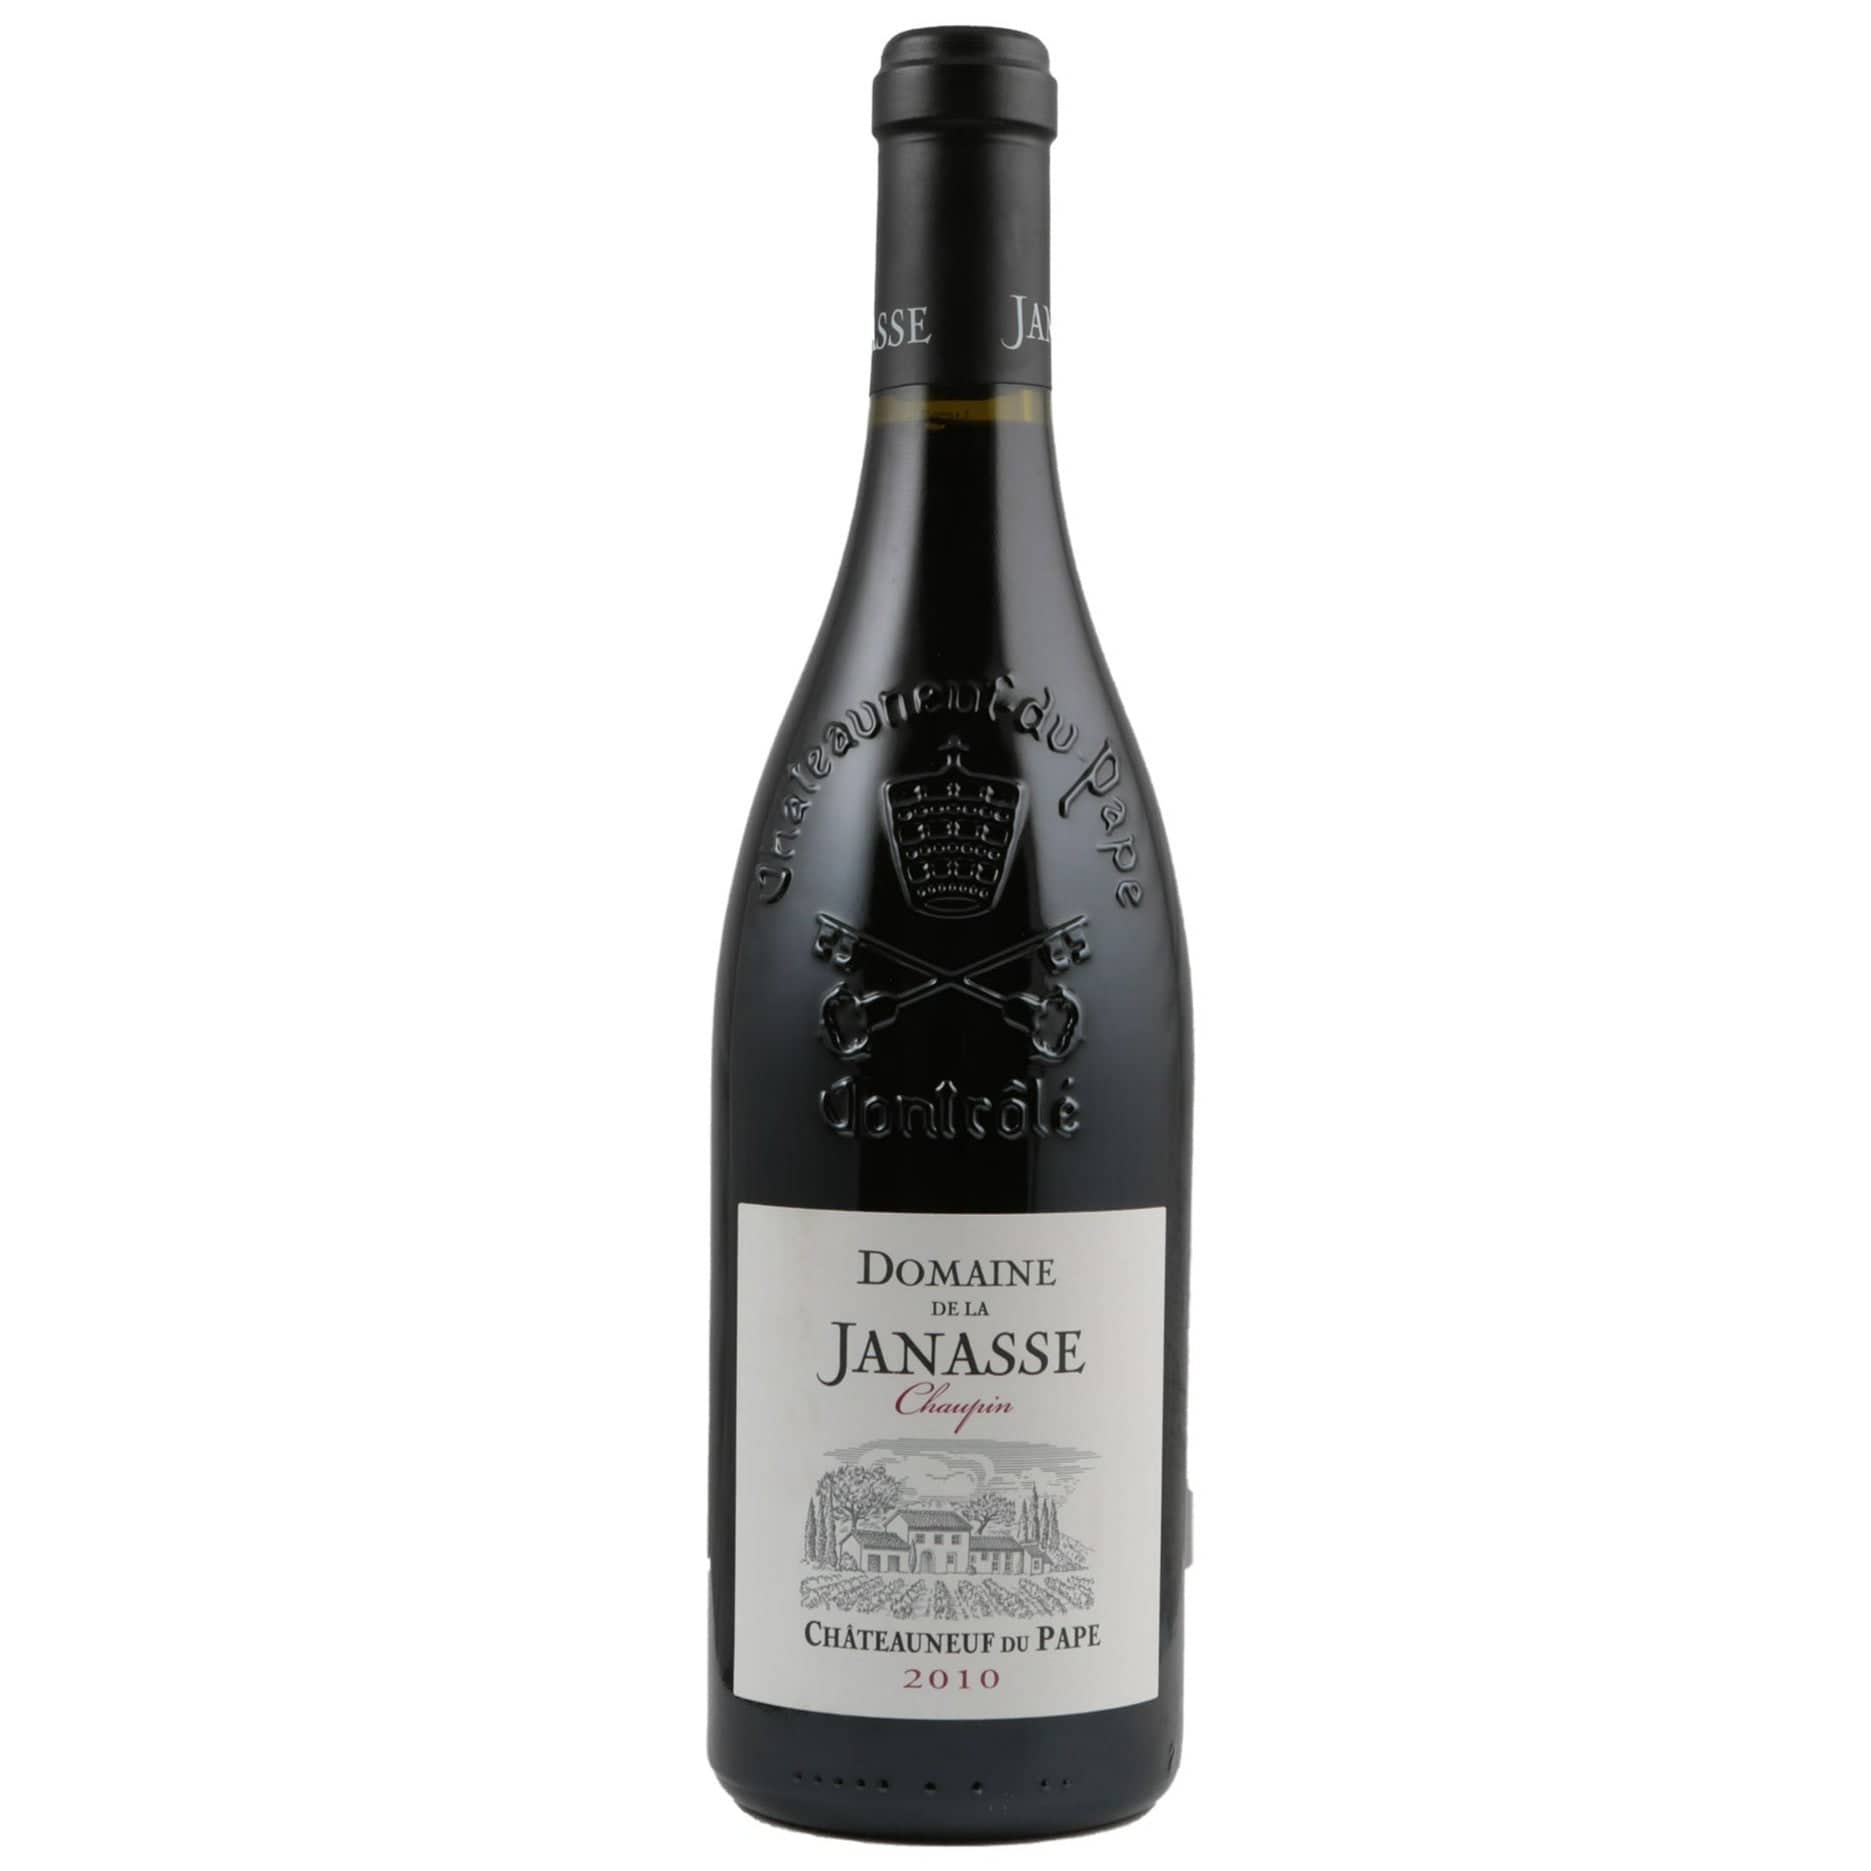 Single bottle of Red wine Domaine de la Janasse, Cuvee Chaupin, Chateauneuf du Pape, 2010 100% Grenache